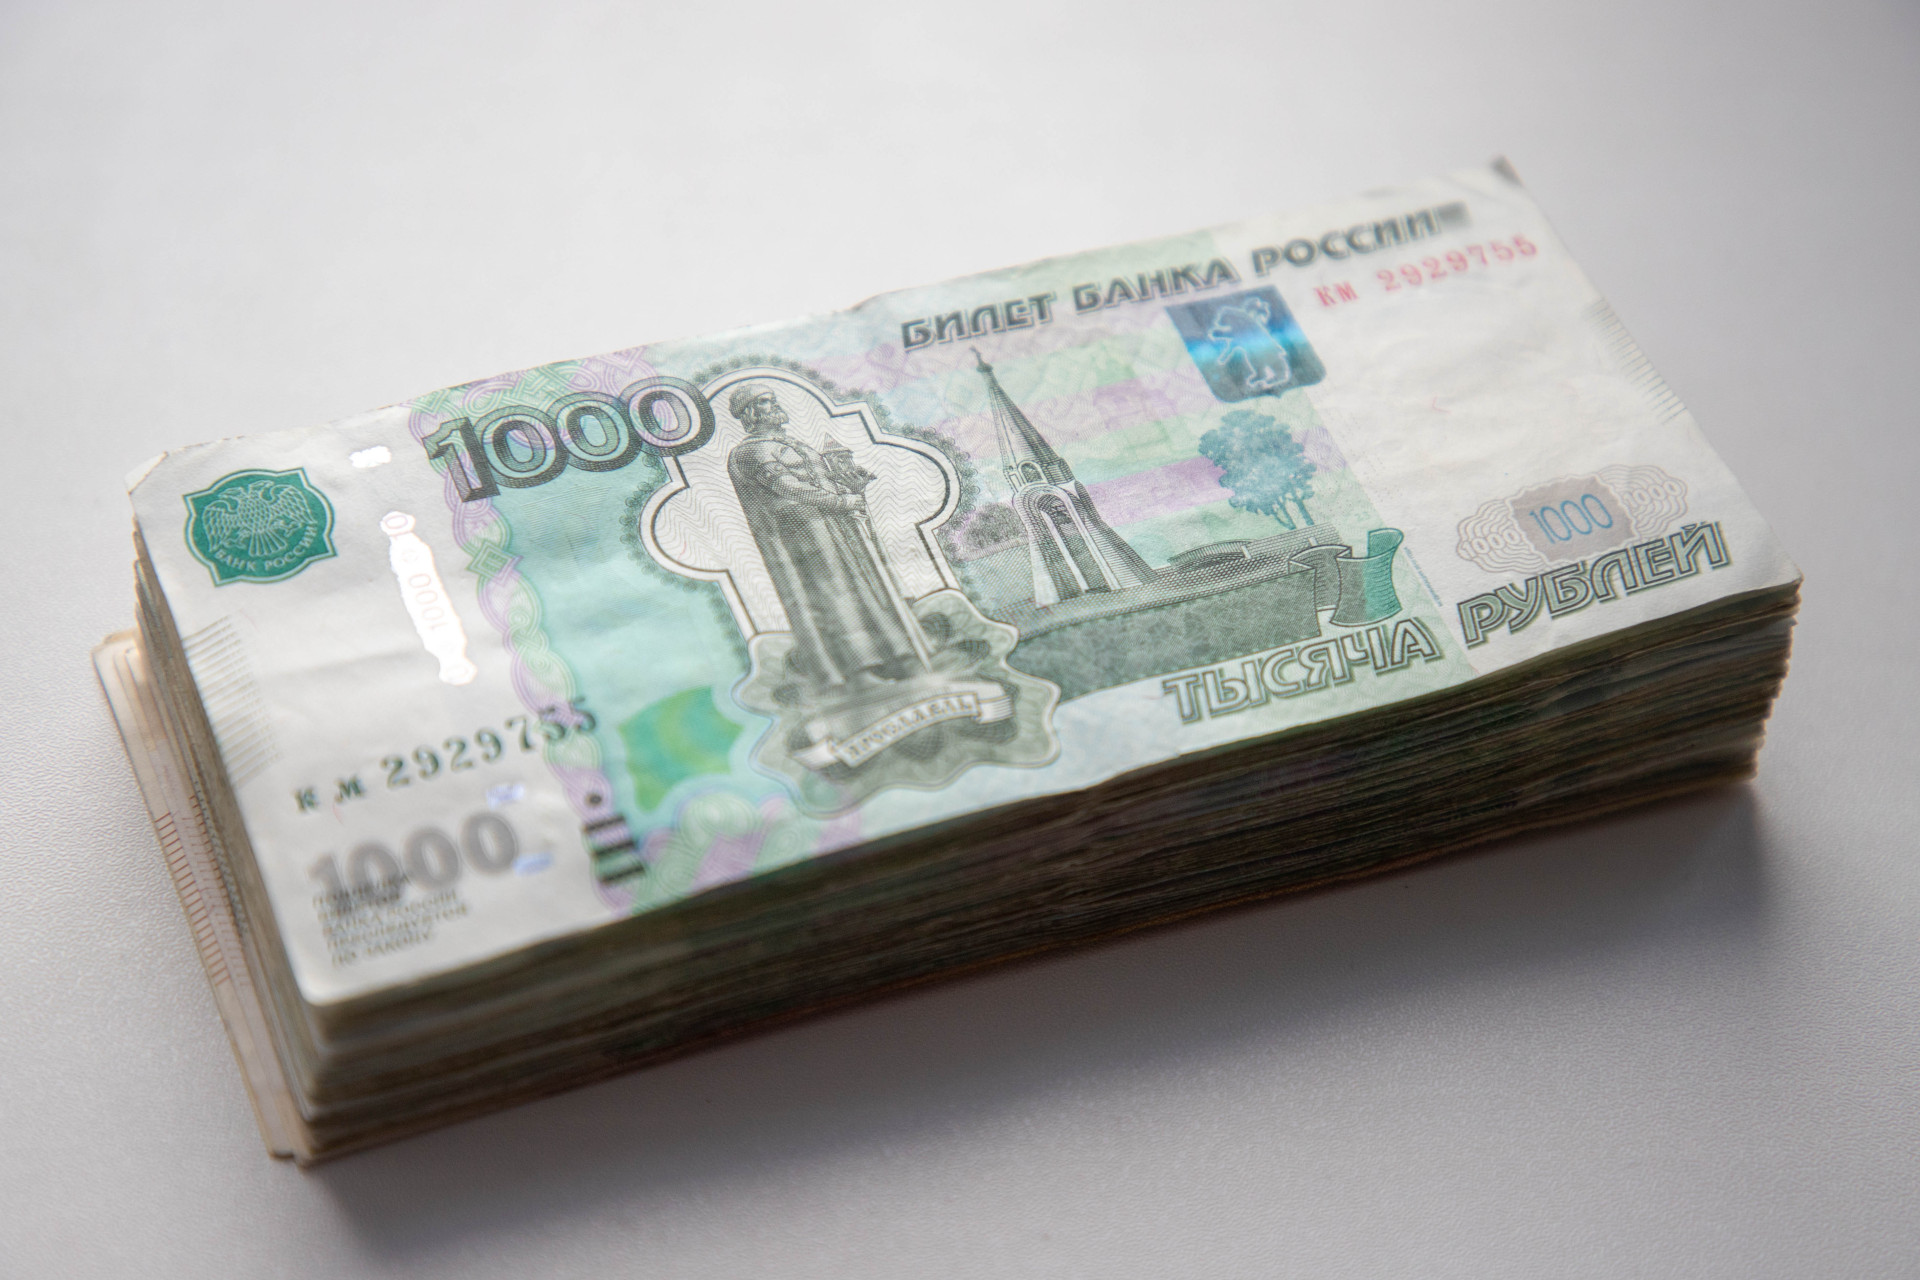 С банковской карты тулячки украли 44 тысячи рублей